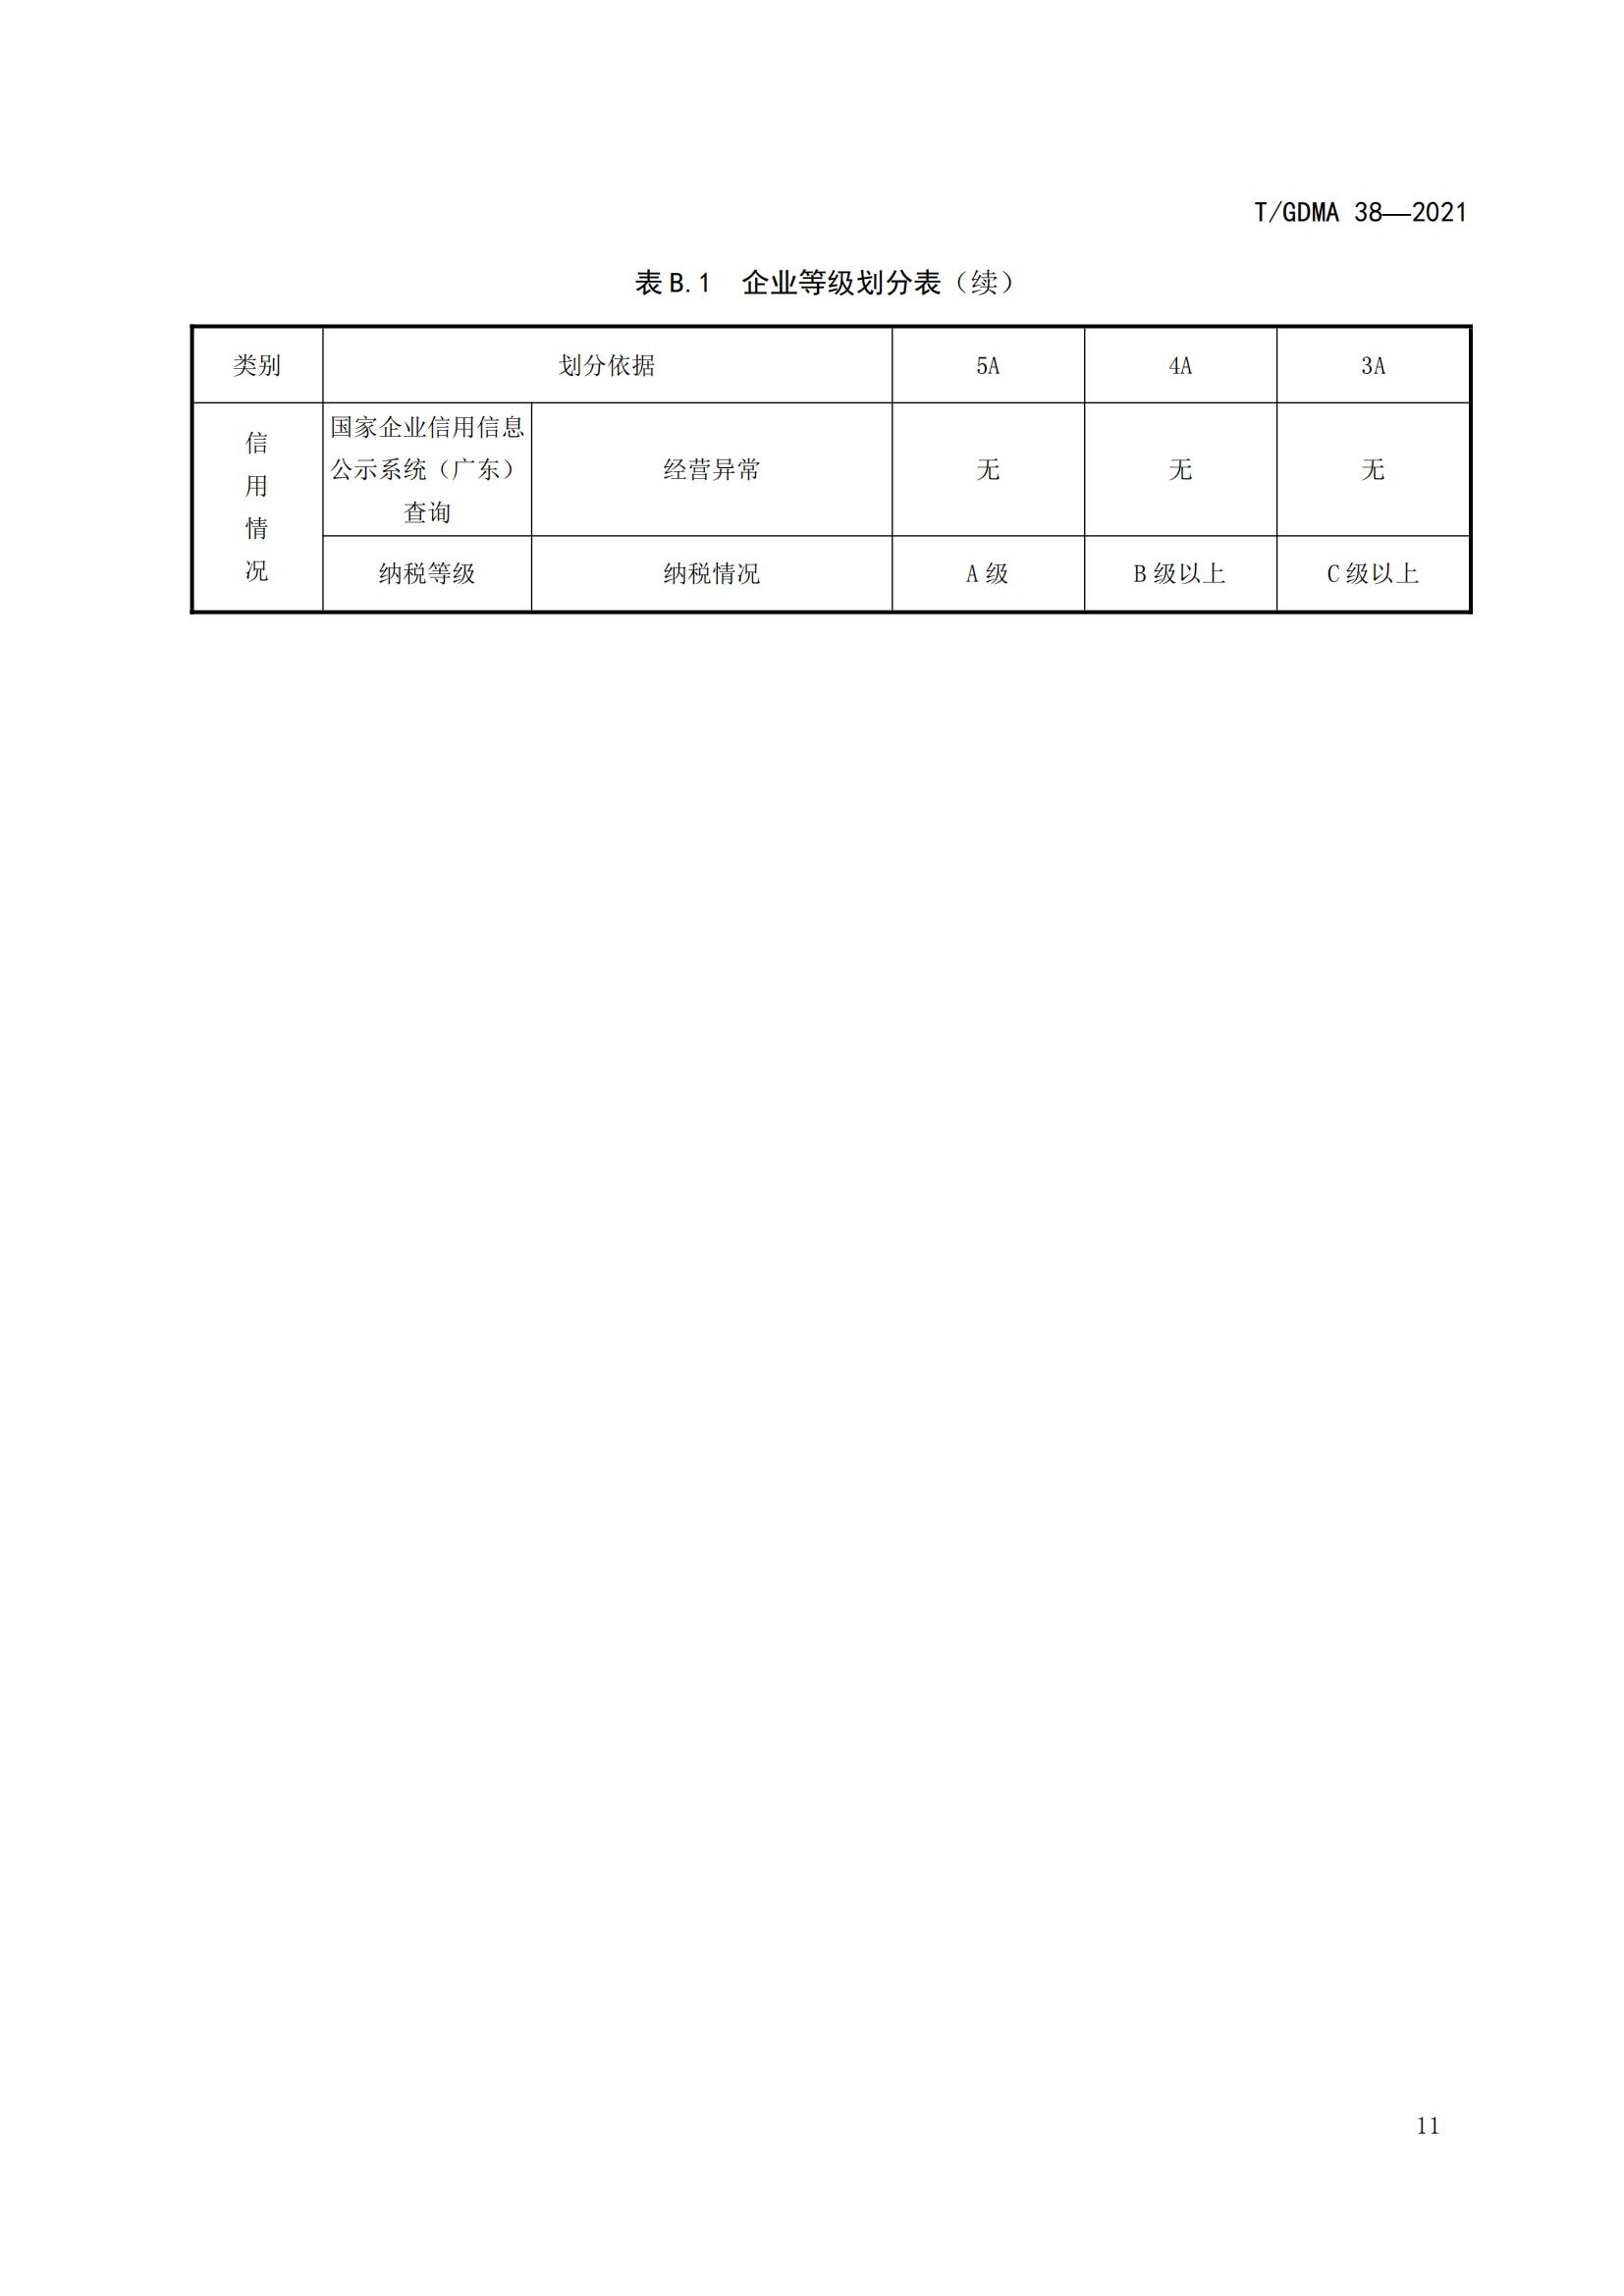 TGDMA 38 广东省守合同重信用企业等级评定规范-发布稿_14.jpg